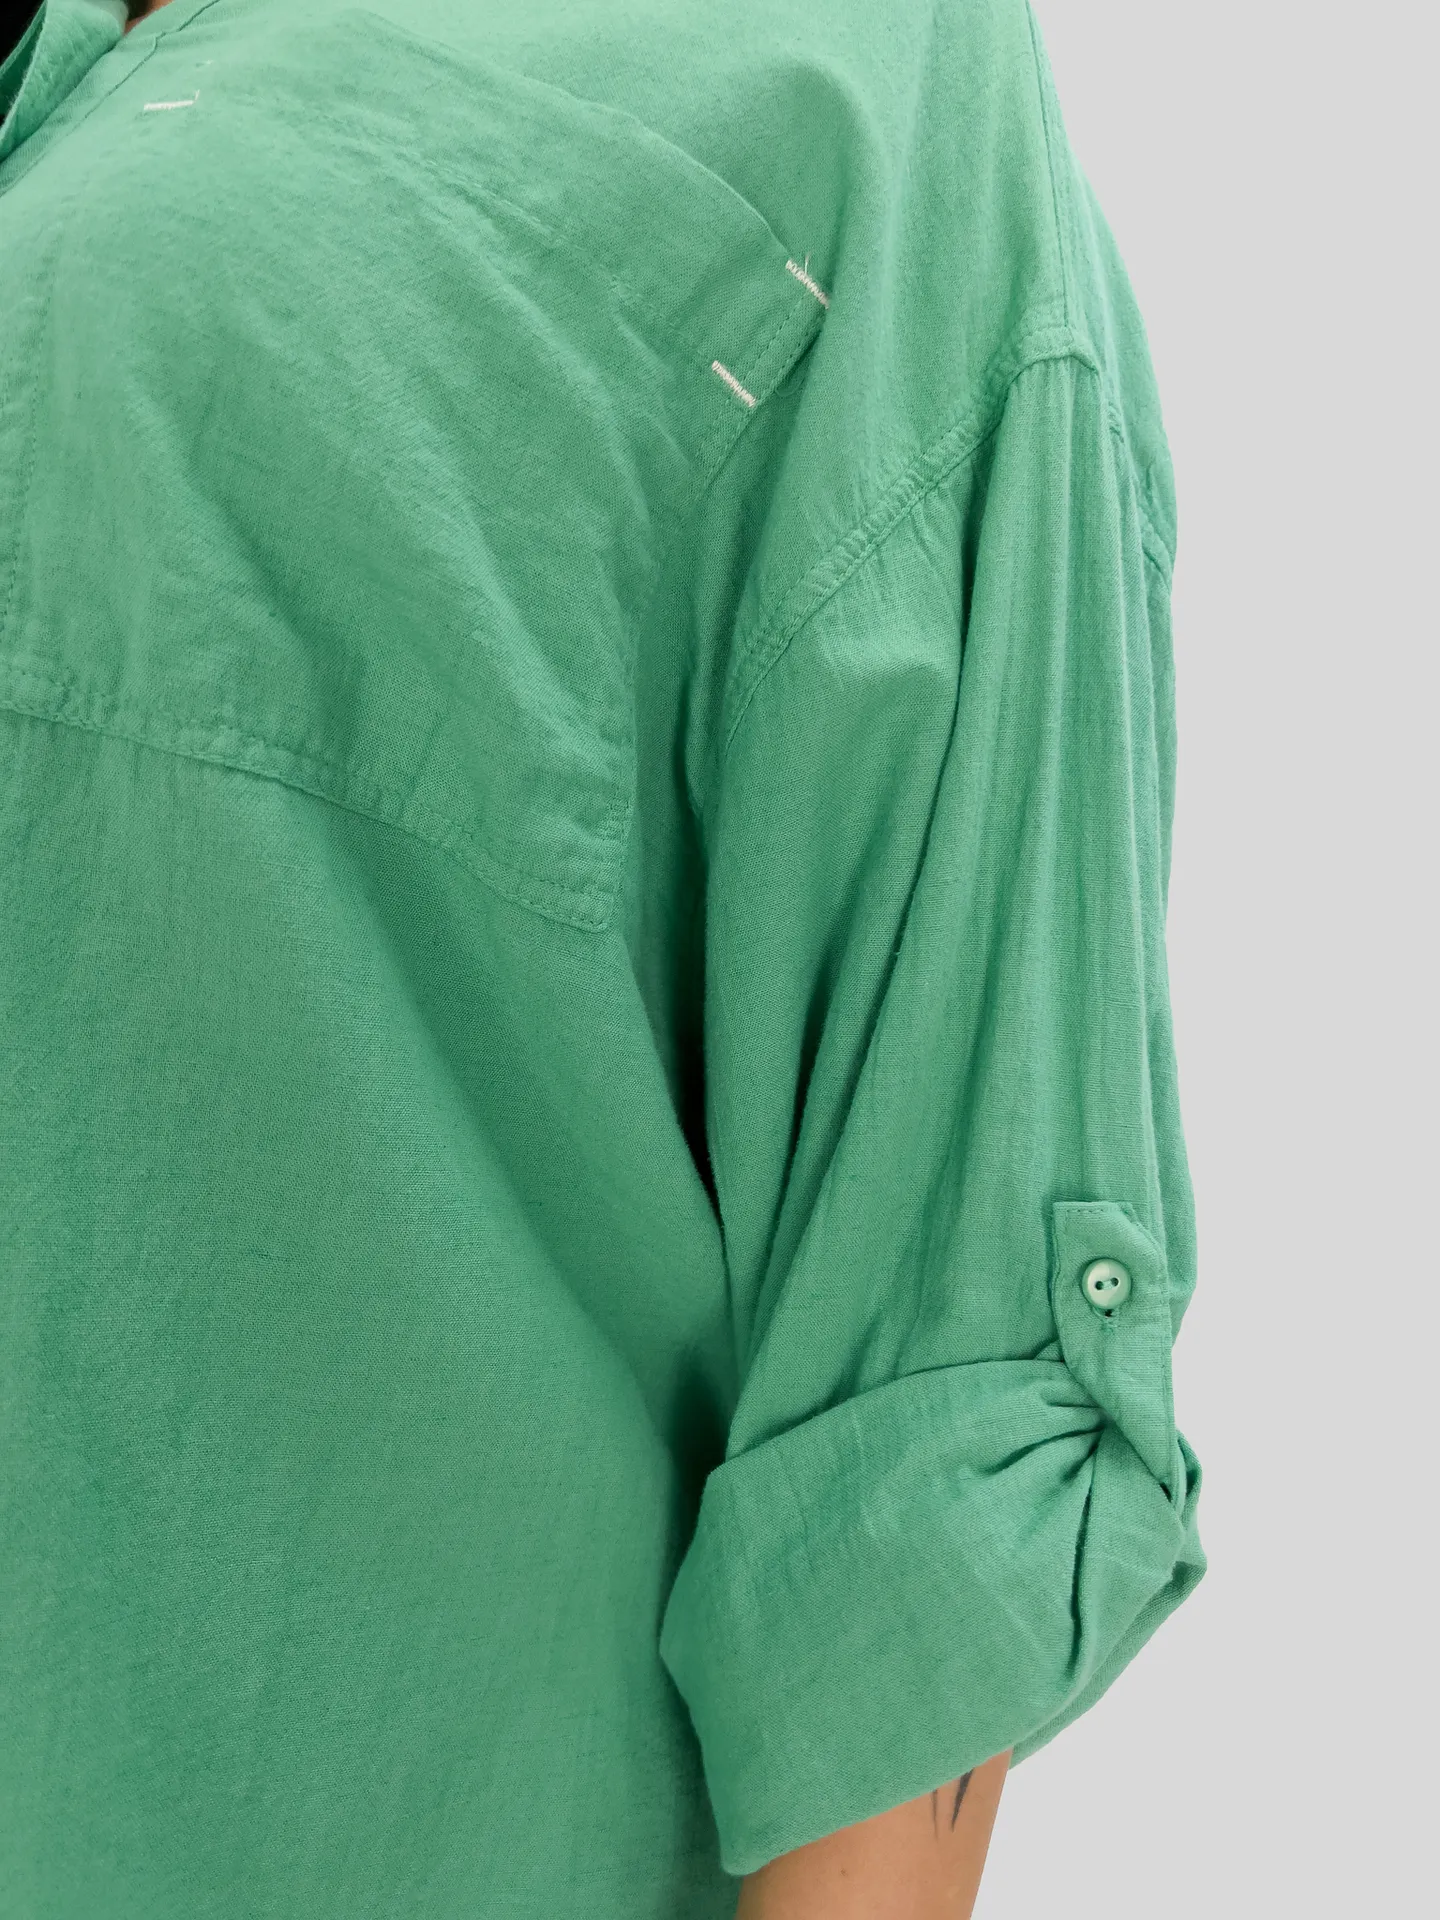 Рубашка Estero Ragazza 3934 однотонная с двумя накладными карманами на груди